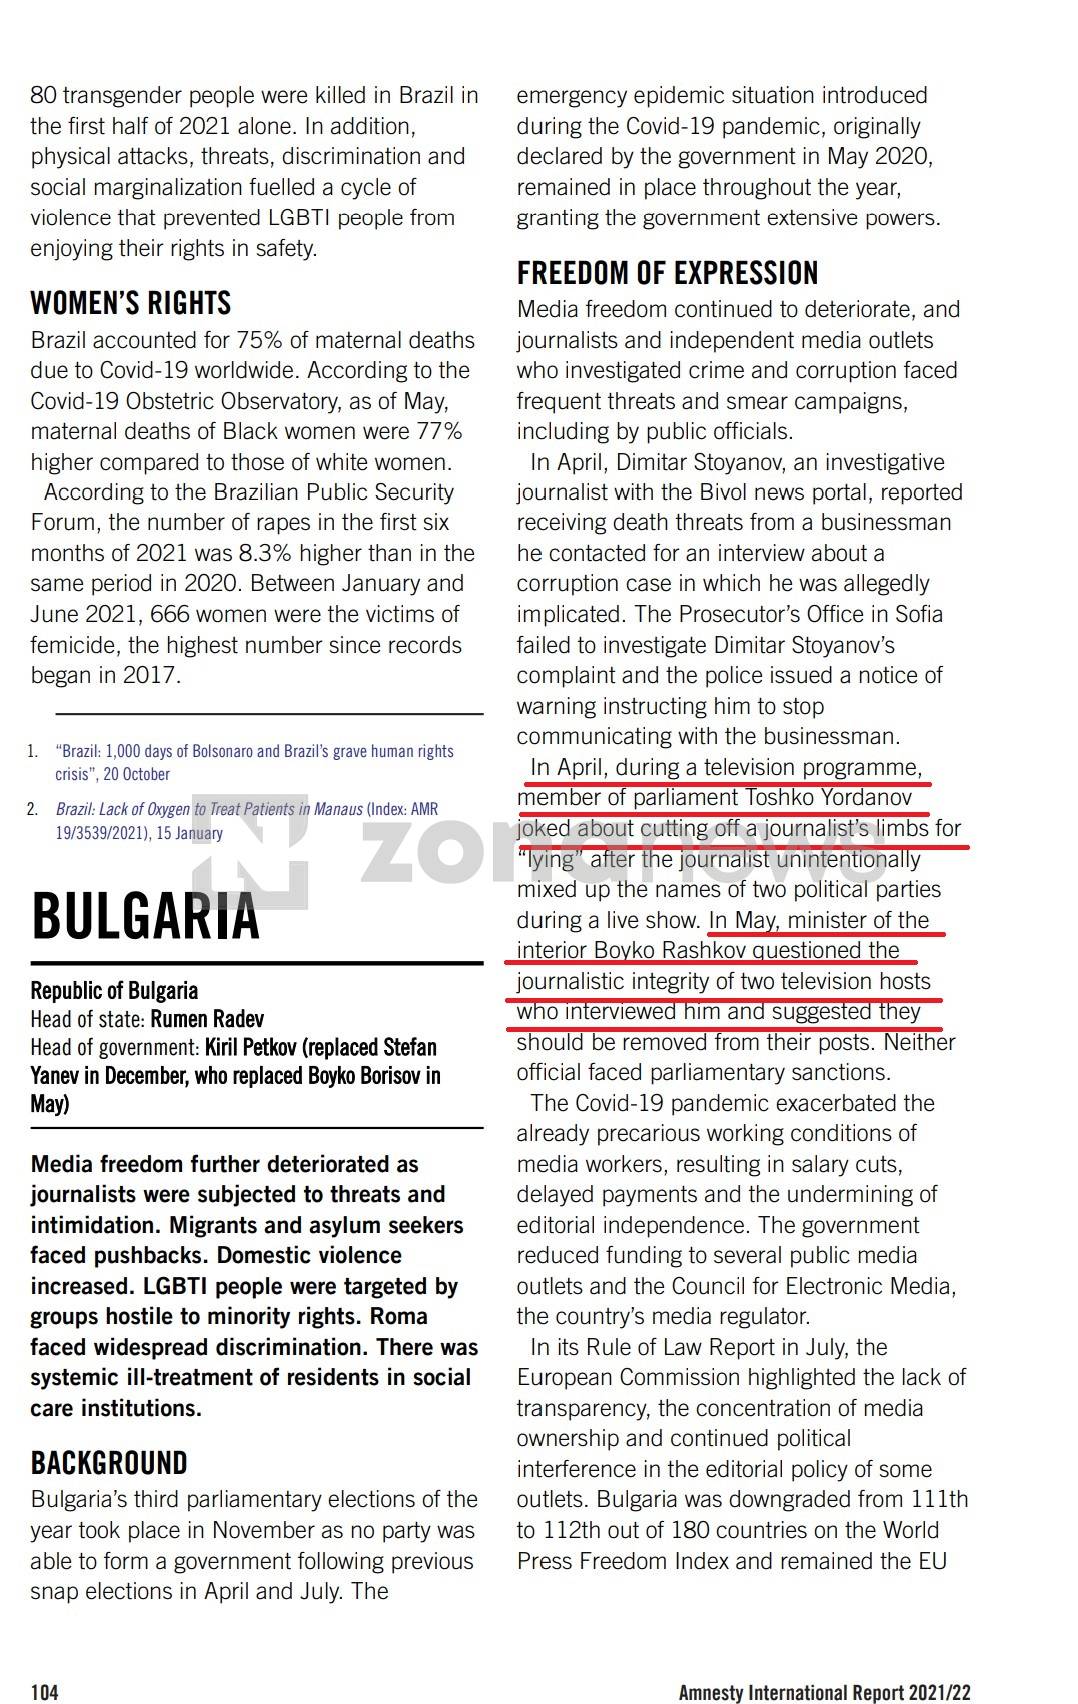 Докладът на Амнести интернешънъл за България 